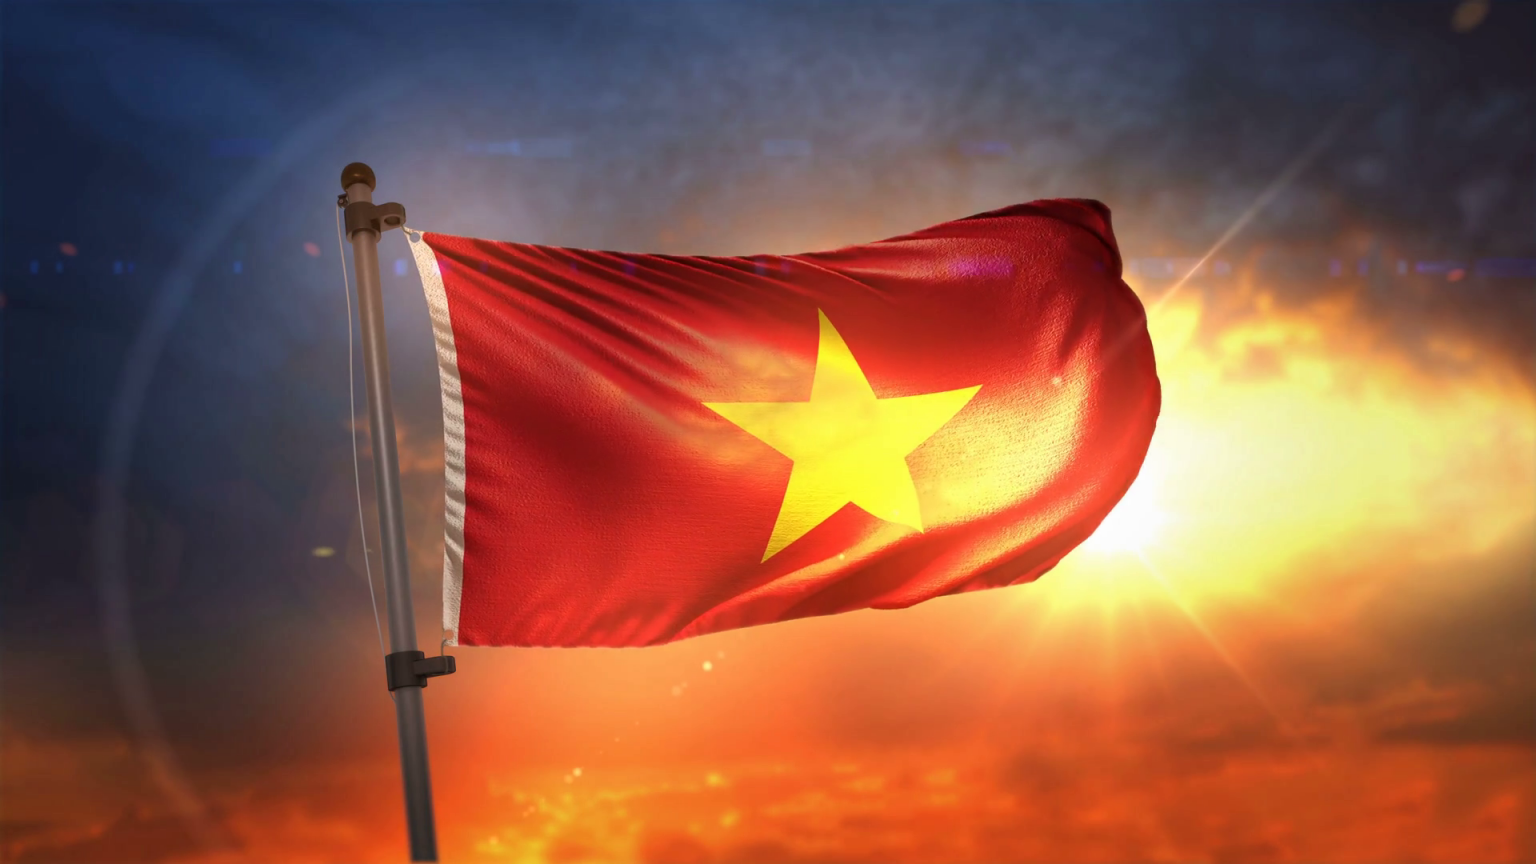 Bộ sưu tập hình ảnh lá cờ Việt Nam cực chất với hơn 999 hình full 4K.